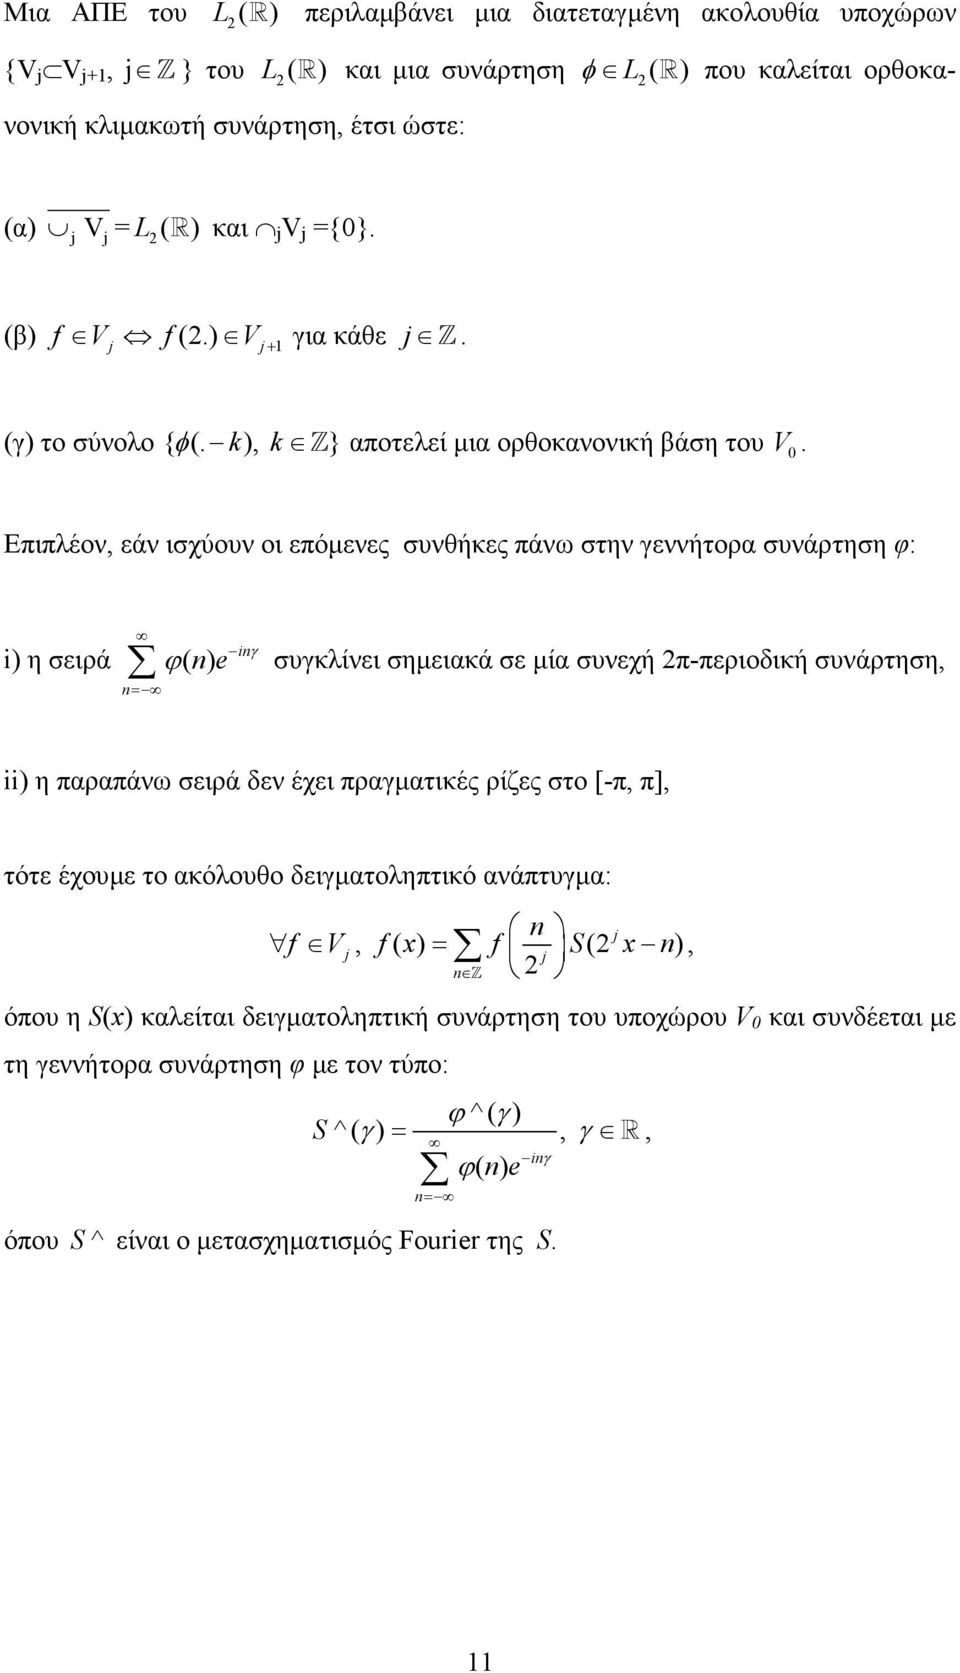 Επιπλέον, εάν ισχύουν οι επόµενες συνθήκες πάνω στην γεννήτορα συνάρτηση φ: i i η σειρά ϕ( e γ συγκλίνει σηµειακά σε µία συνεχή π-περιοδική συνάρτηση, = ii η παραπάνω σειρά δεν έχει πραγµατικές